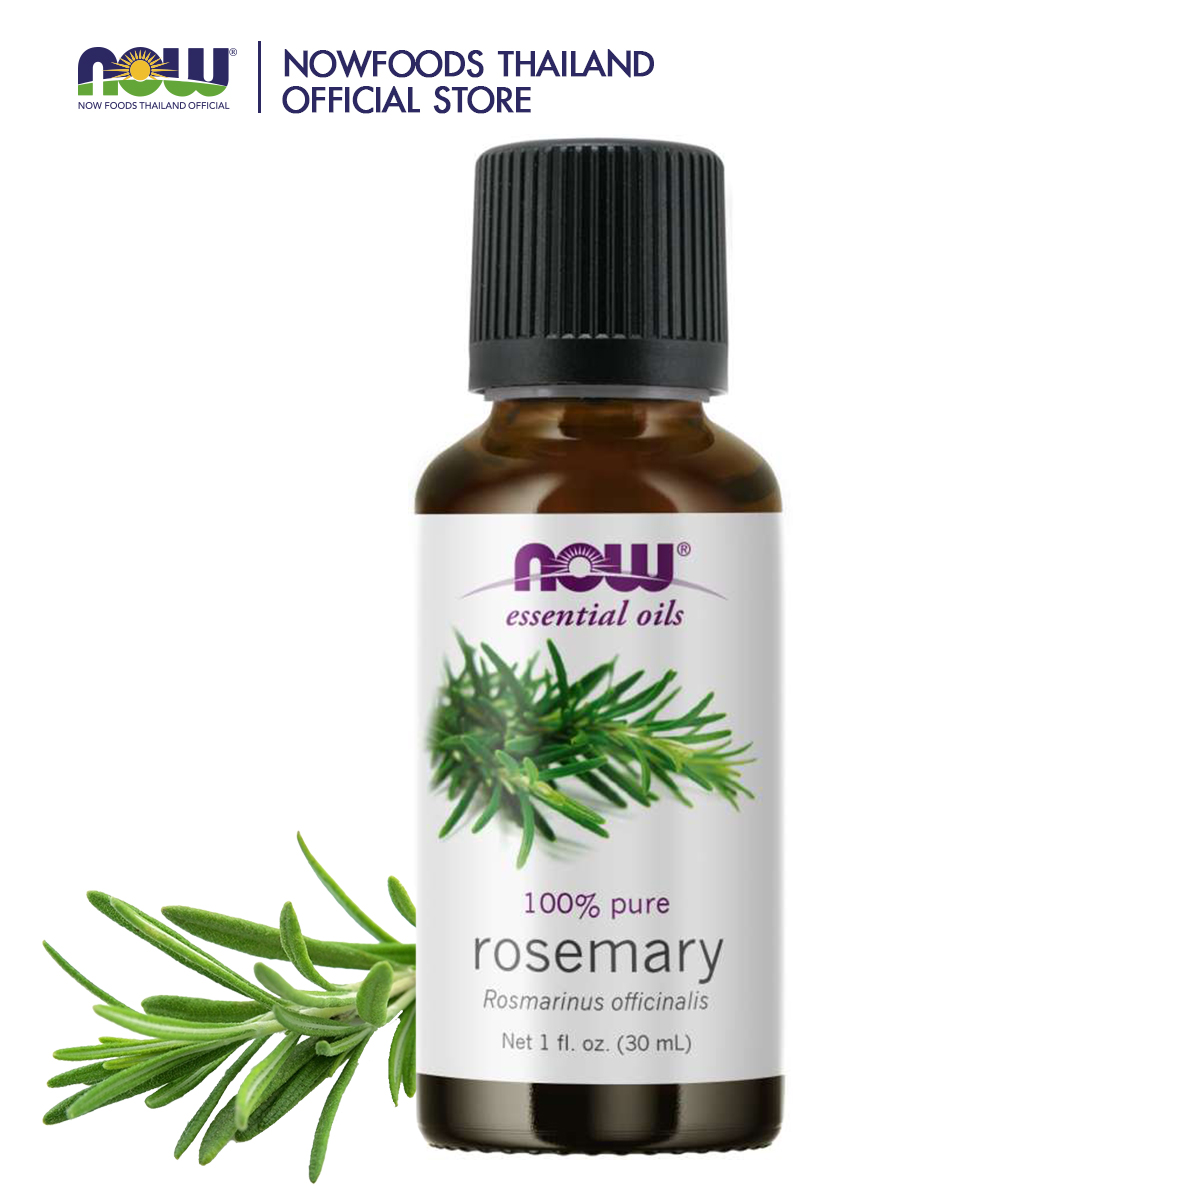 NOW Rosemary Oil